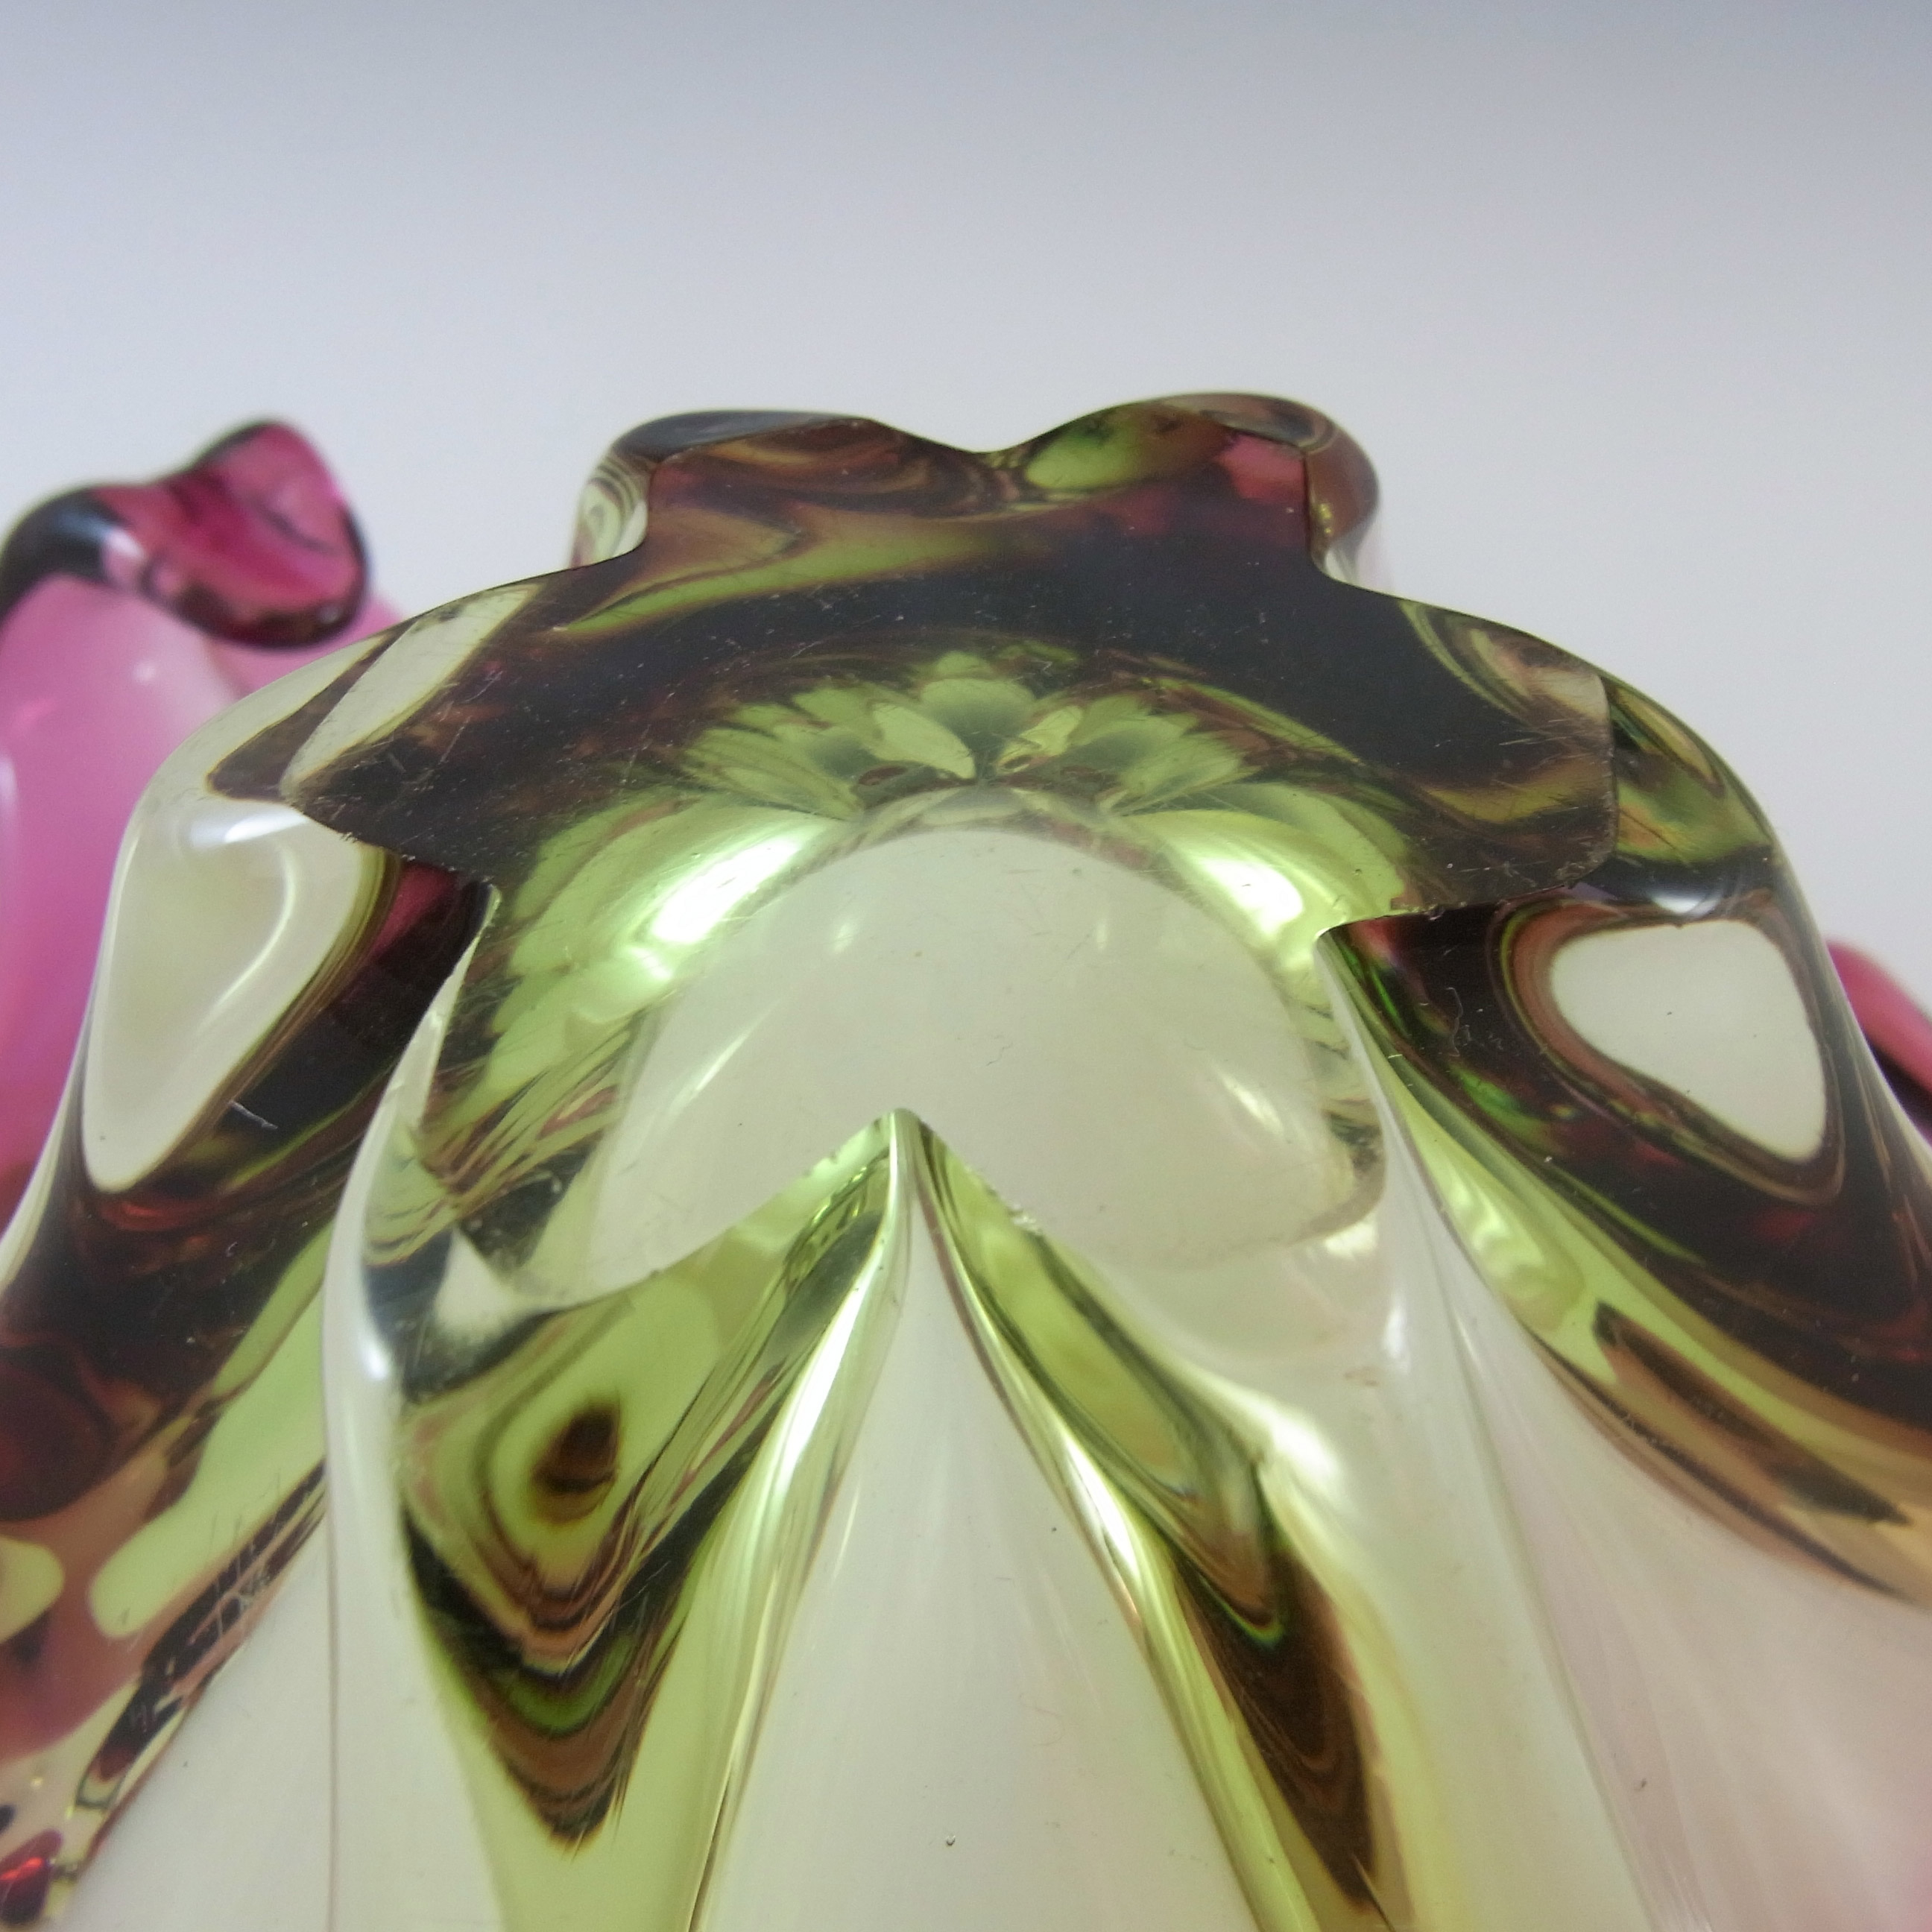 Cristallo Venezia CCC Murano Green & Pink Cased Glass Bowl - Click Image to Close